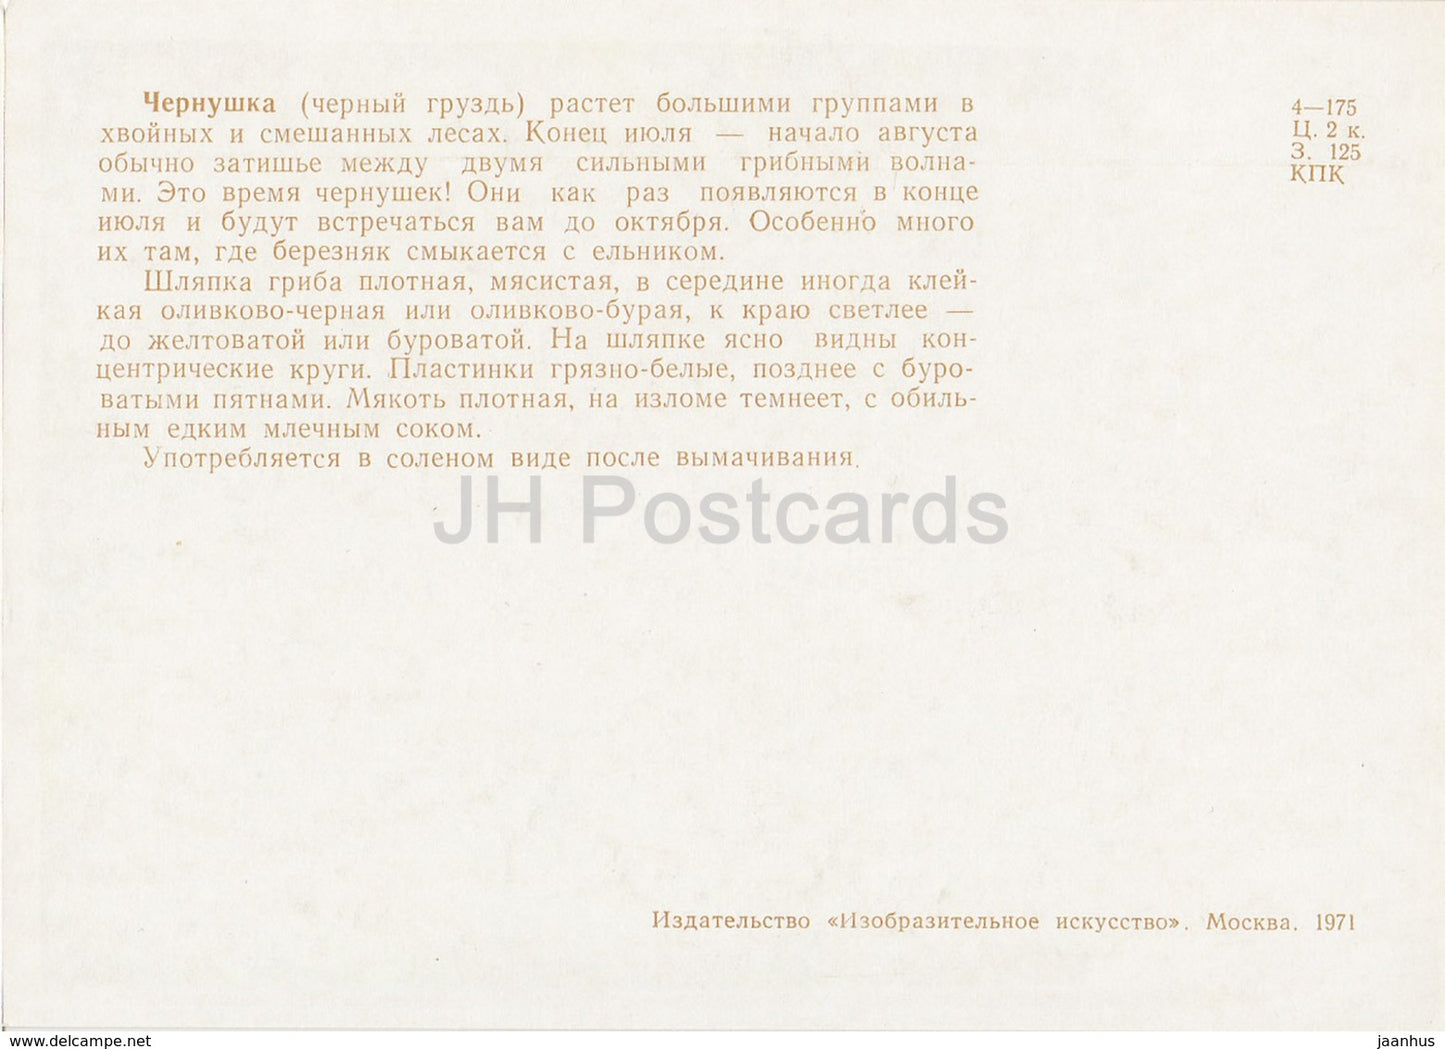 Ugly Milk-cap - Lactarius turpis - champignons - illustration - 1971 - Russie URSS - inutilisé